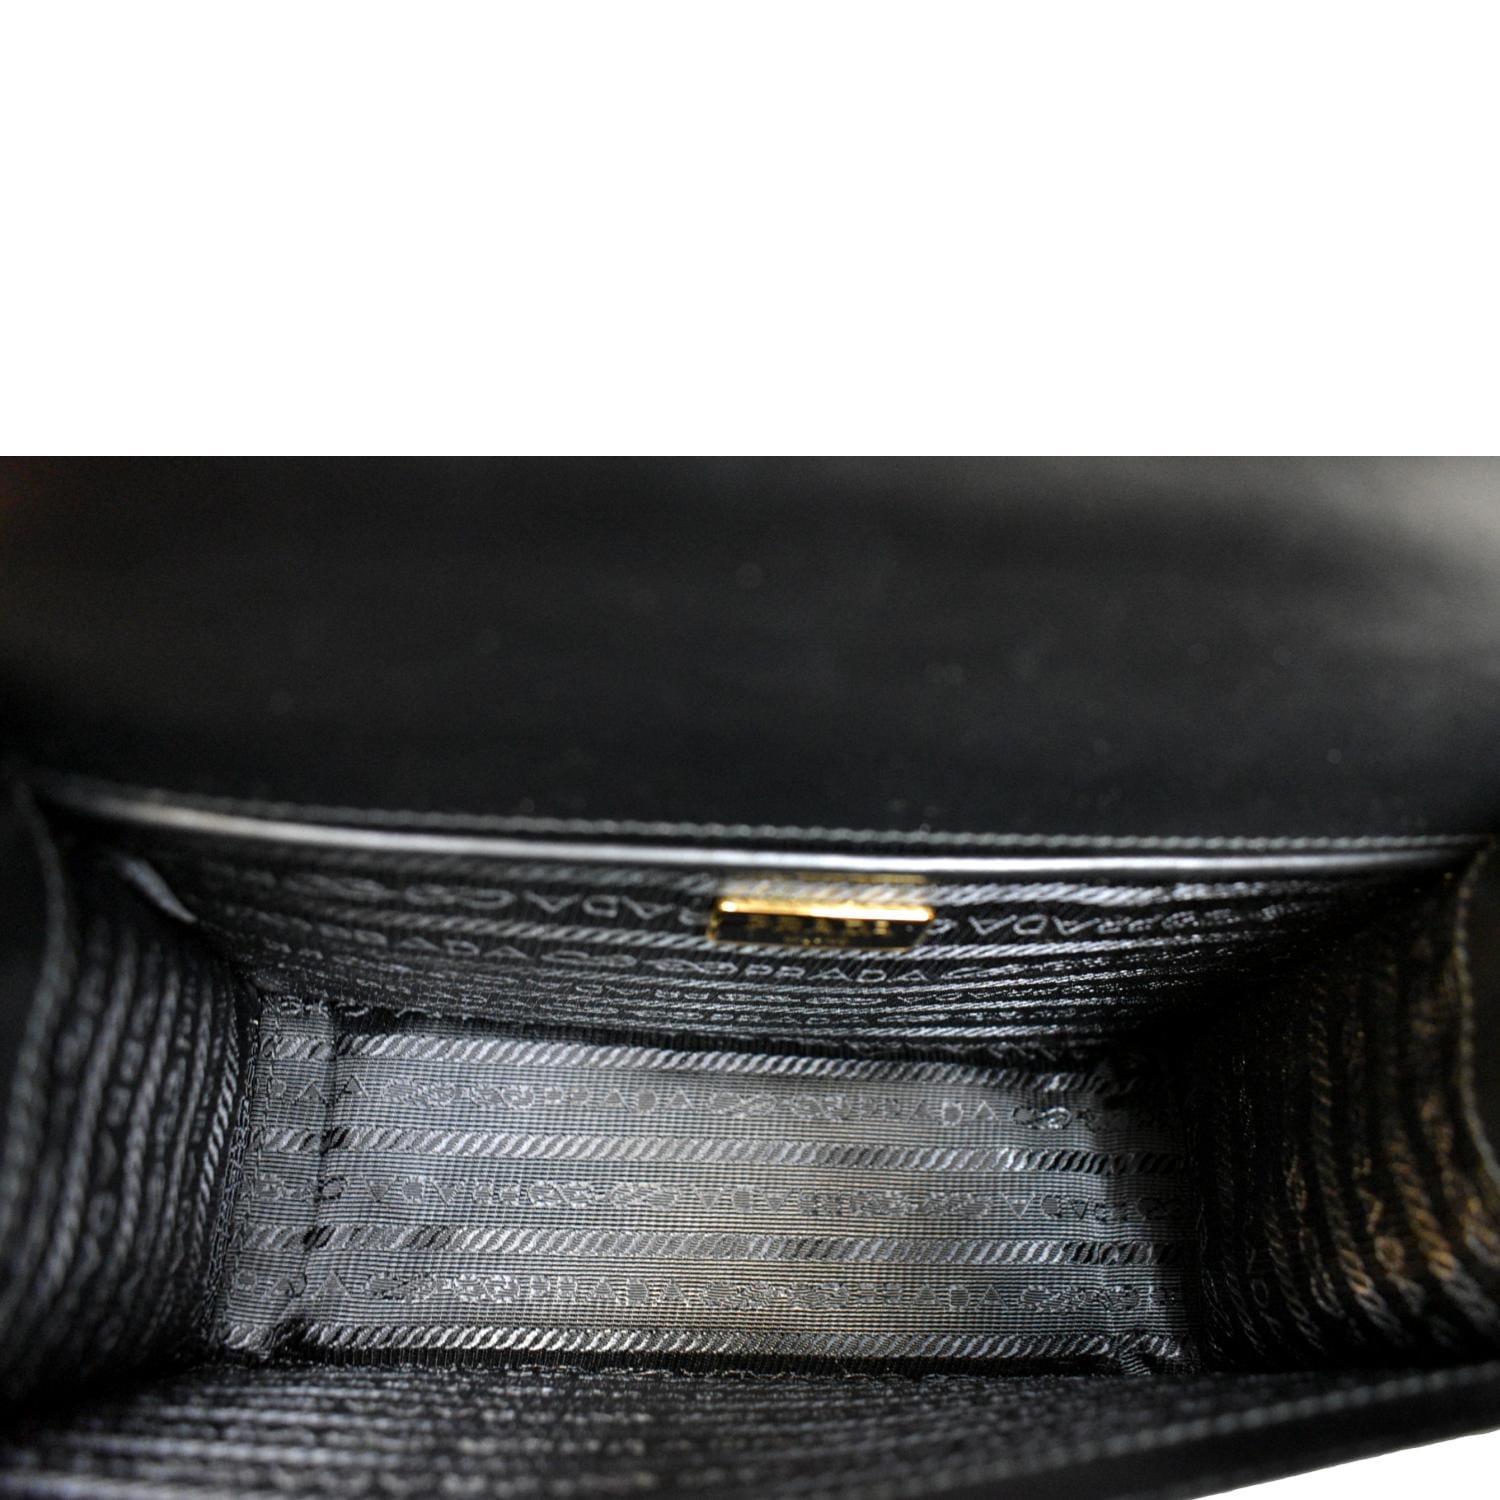 Prada Black Saffiano Lux Bow Crossbody Bag Leather Pony-style